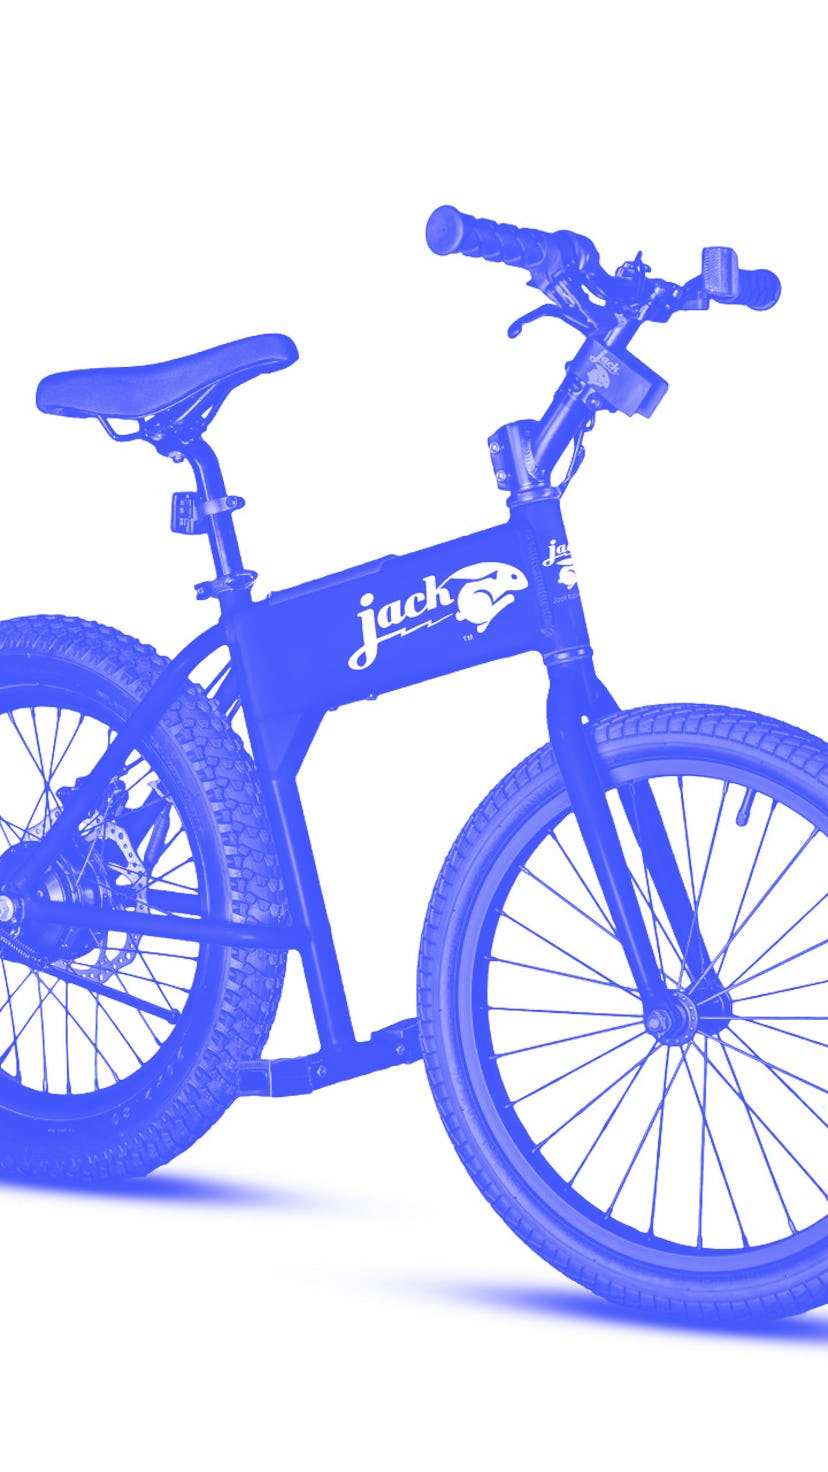 Jackrabbit's mini electric bicycle.